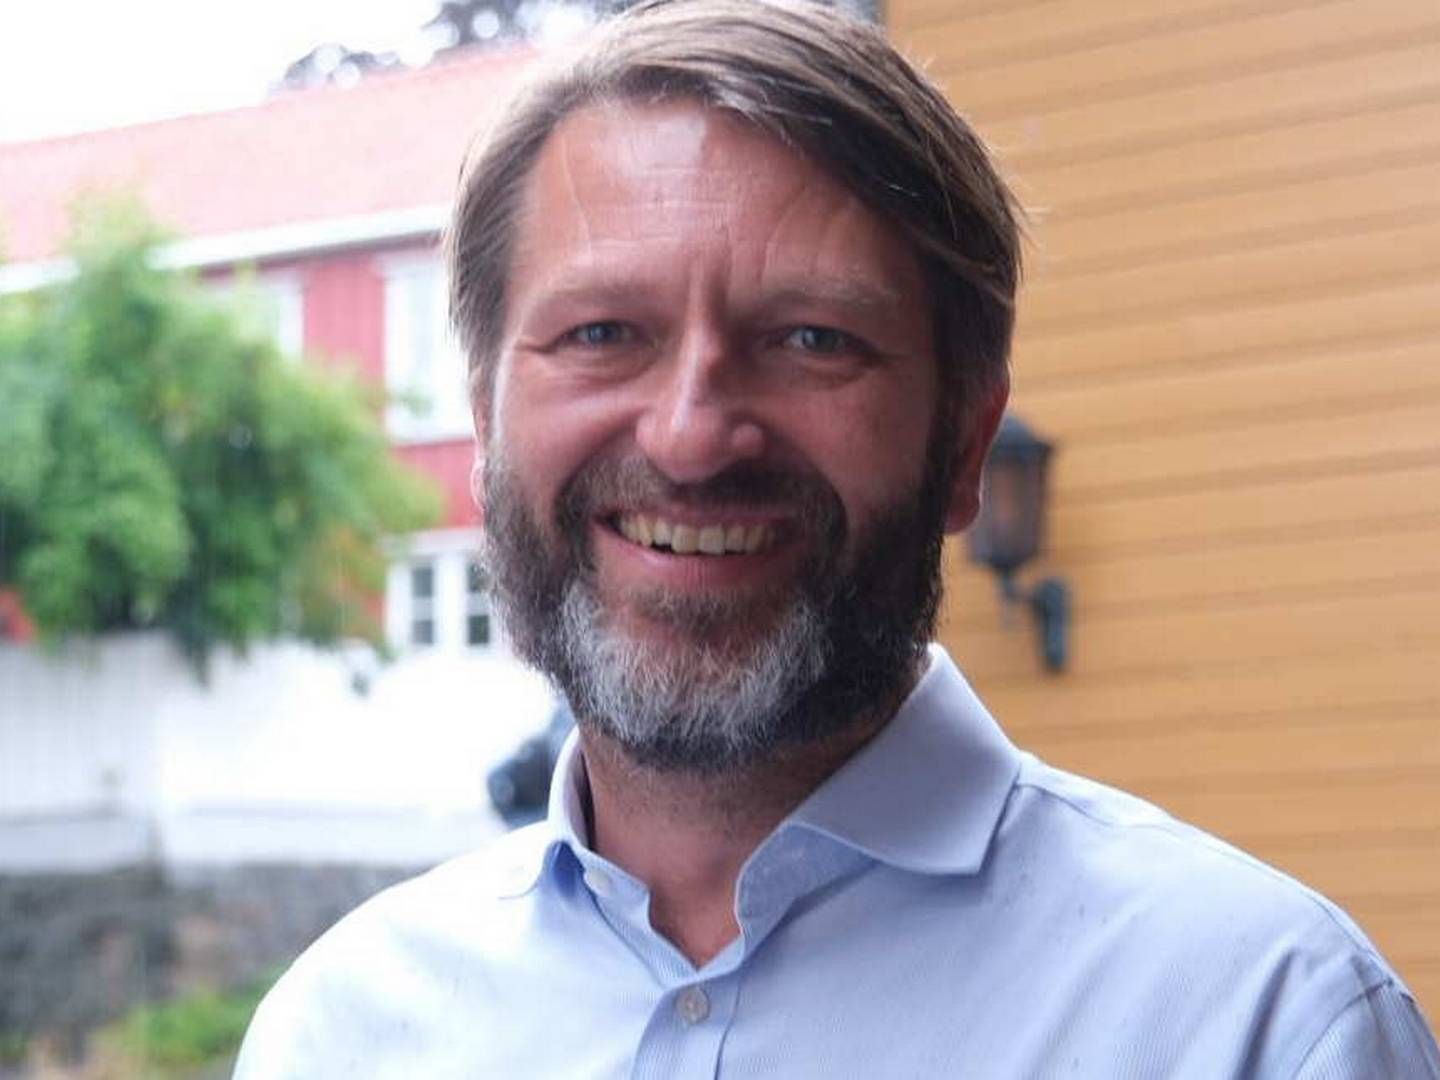 TILBAKE I ARENDAL: Høyres byrådslederkandidat i Oslo, Eirik Lae Solberg, har boligpolitikk som en av sine fanesaker. | Foto: Fabian Skalleberg Nilsen